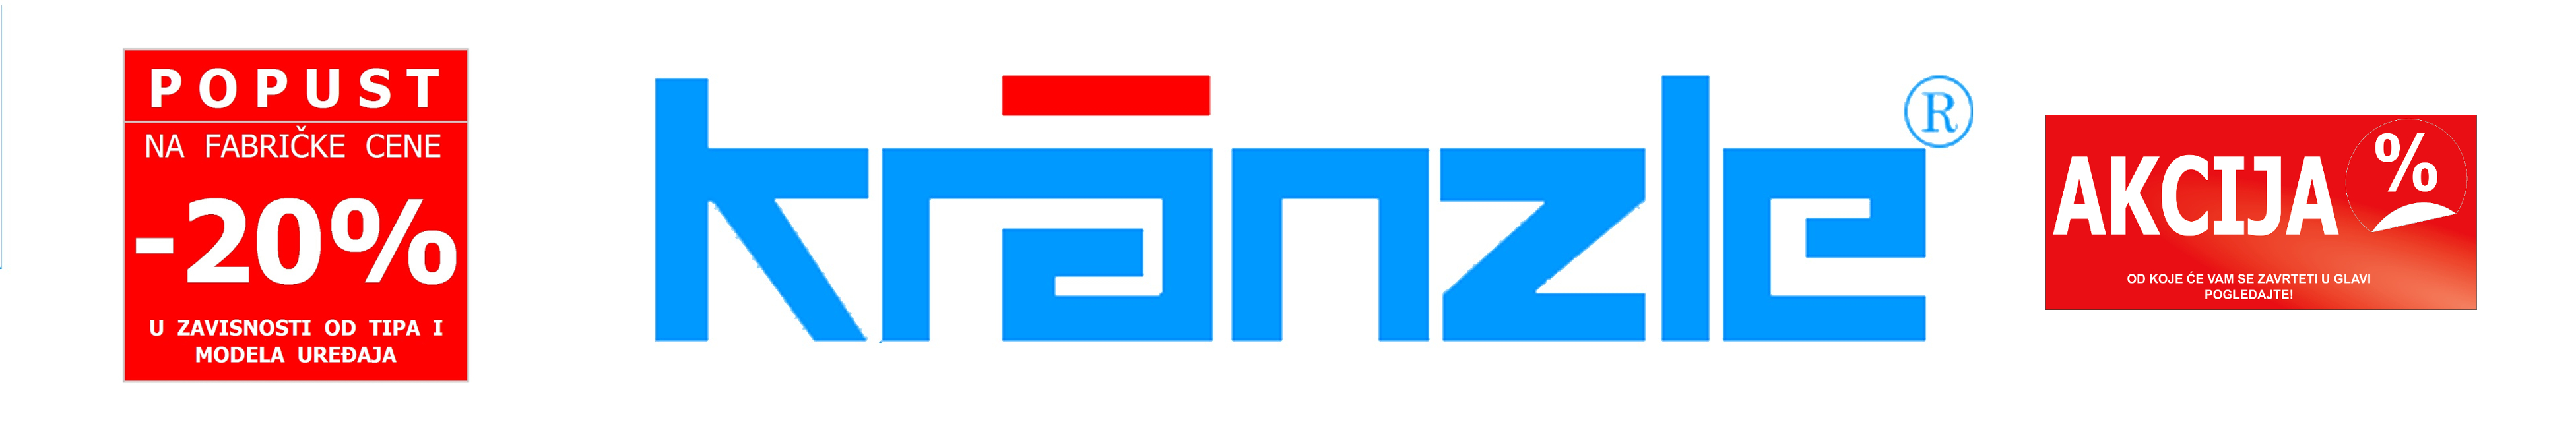 kranzle logo